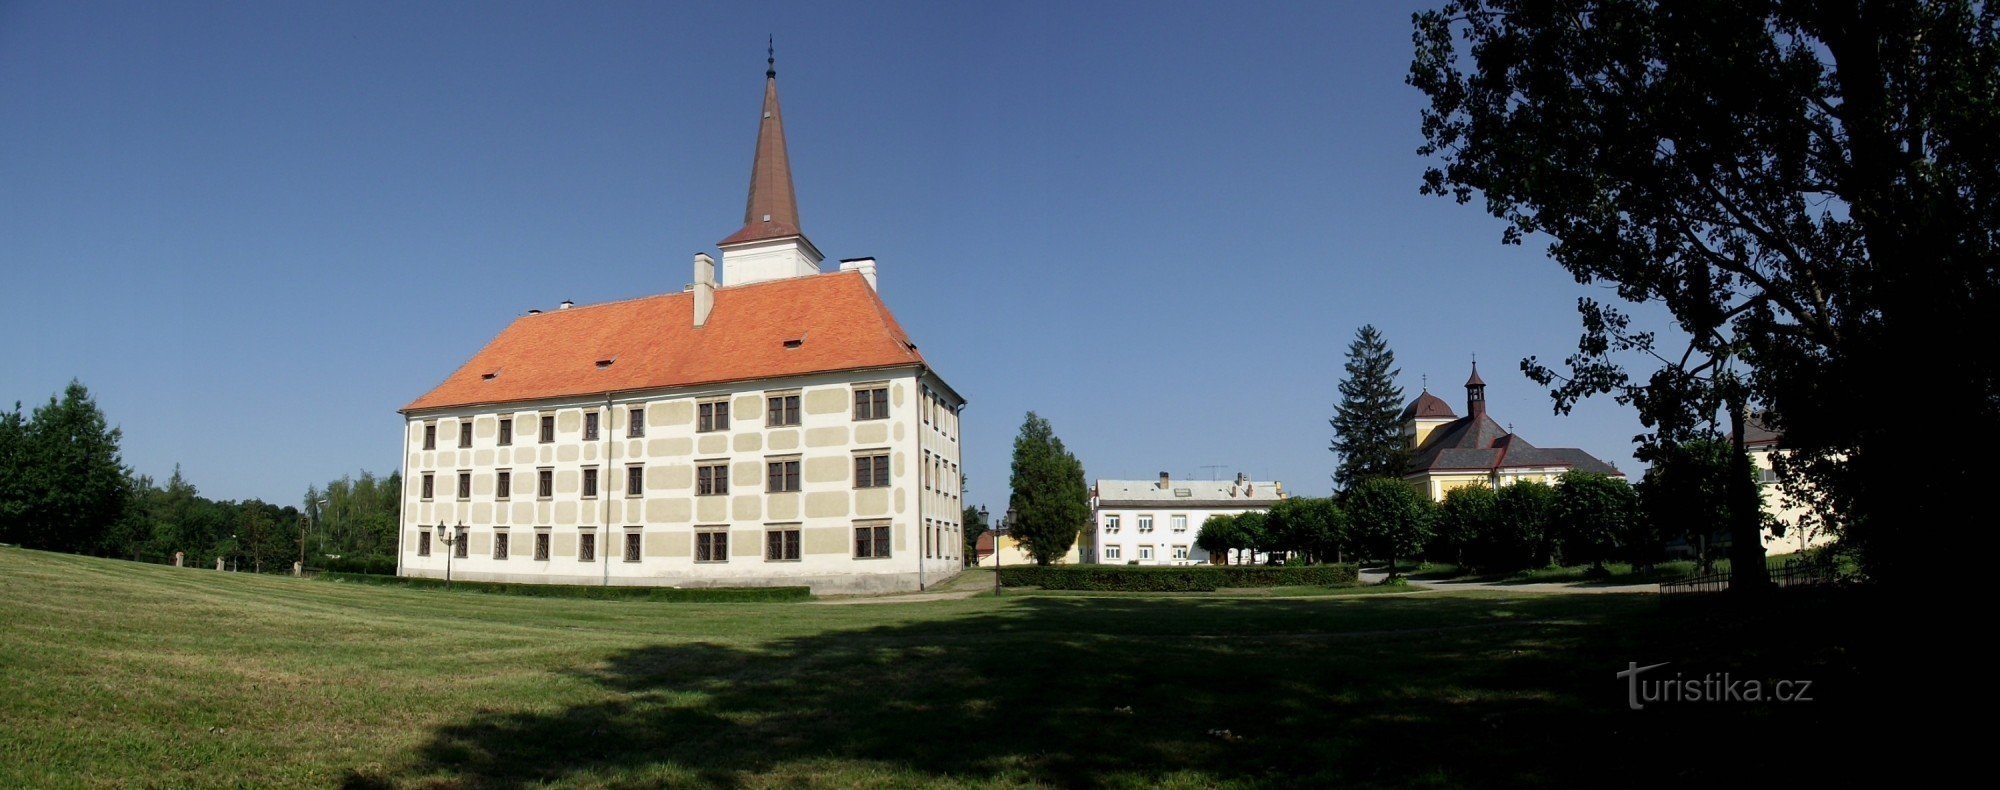 Zamek Chropyň jest dziełem budowniczego GP Tencalla